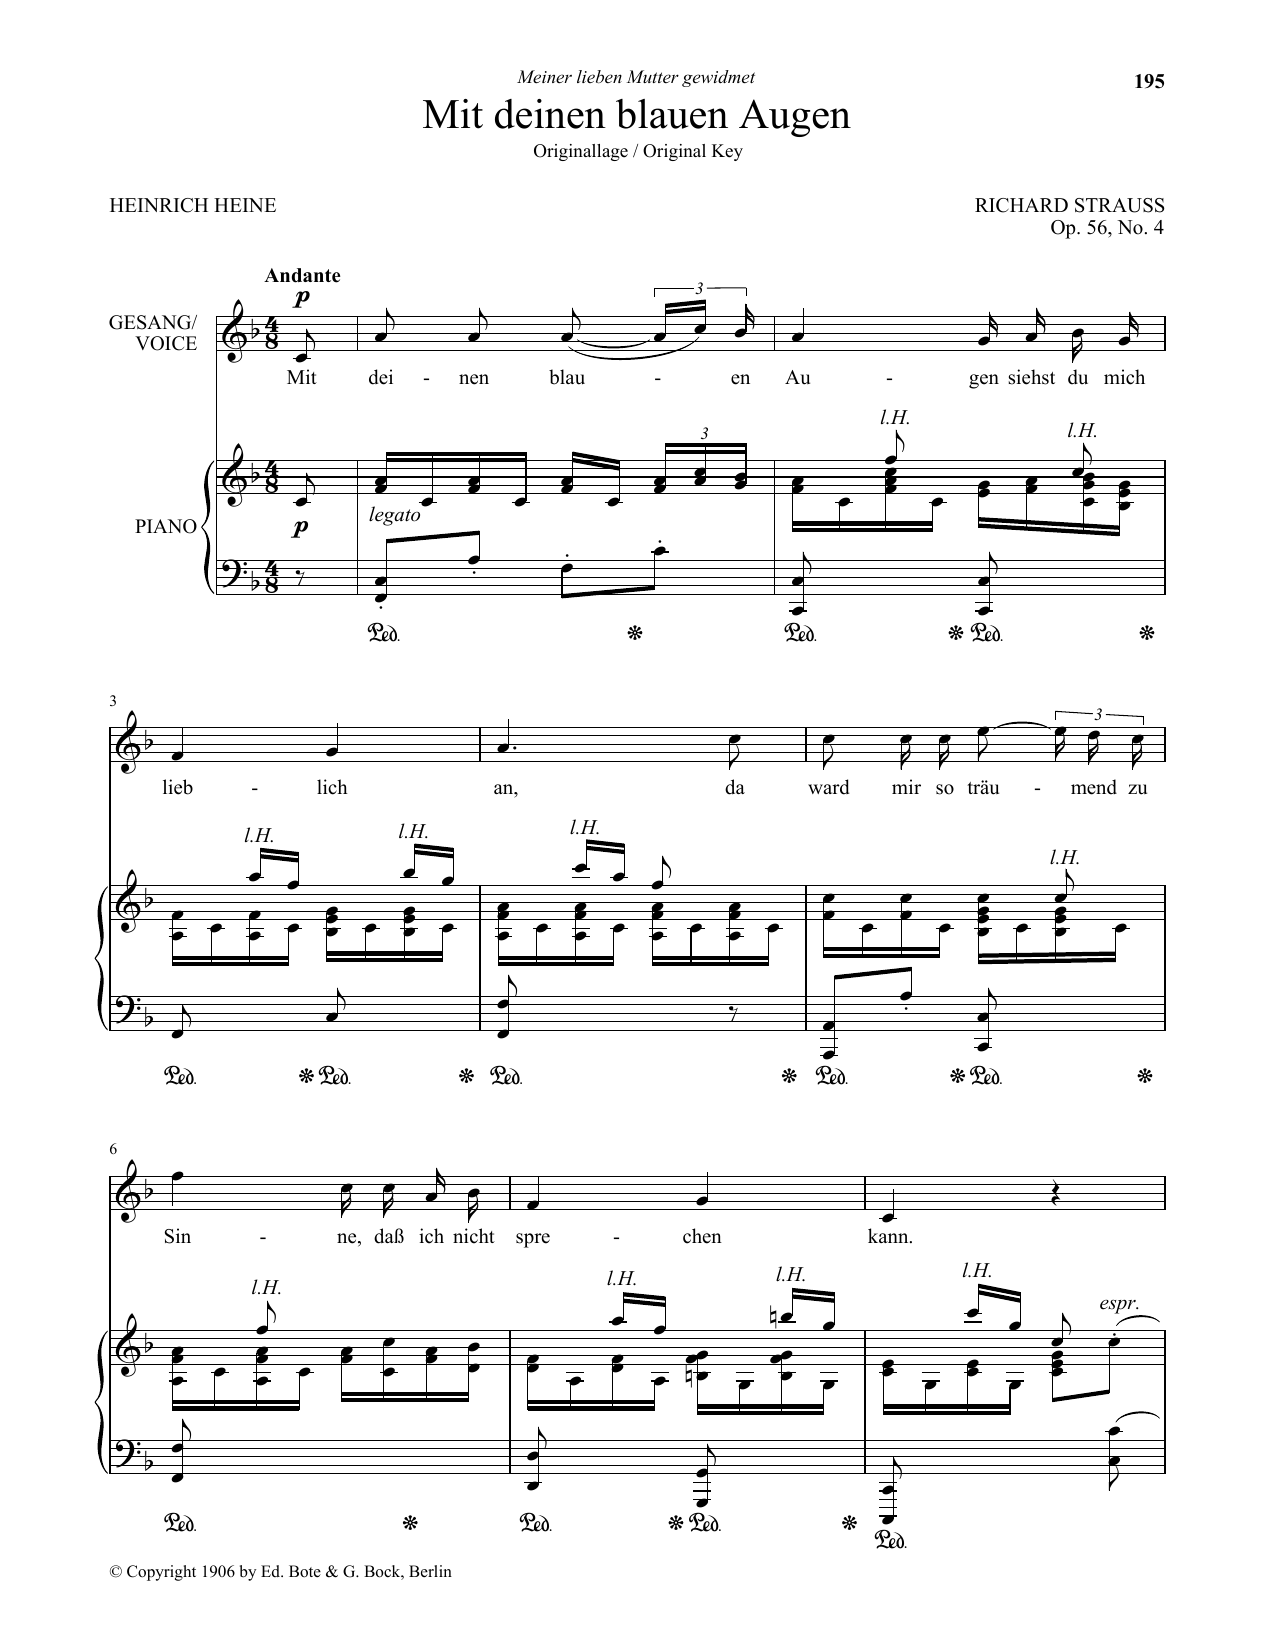 Richard Strauss Mit Deinen Blauen Augen (Low Voice) Sheet Music Notes & Chords for Piano & Vocal - Download or Print PDF